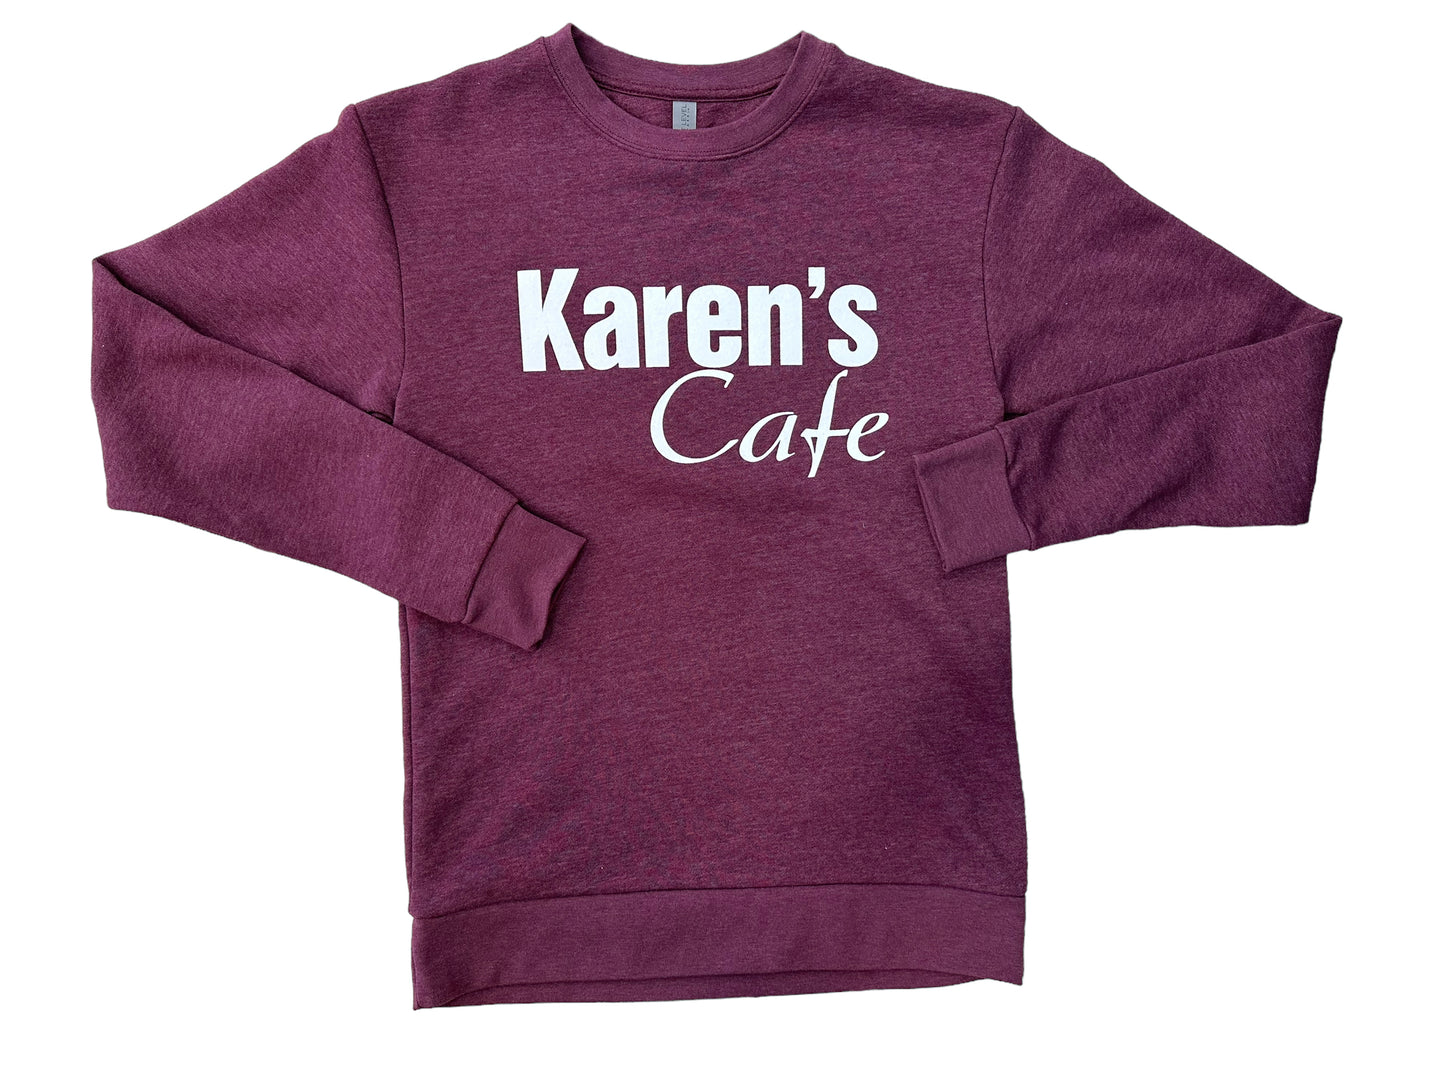 Karens Cafe - Crew Neck  - Cardinal red